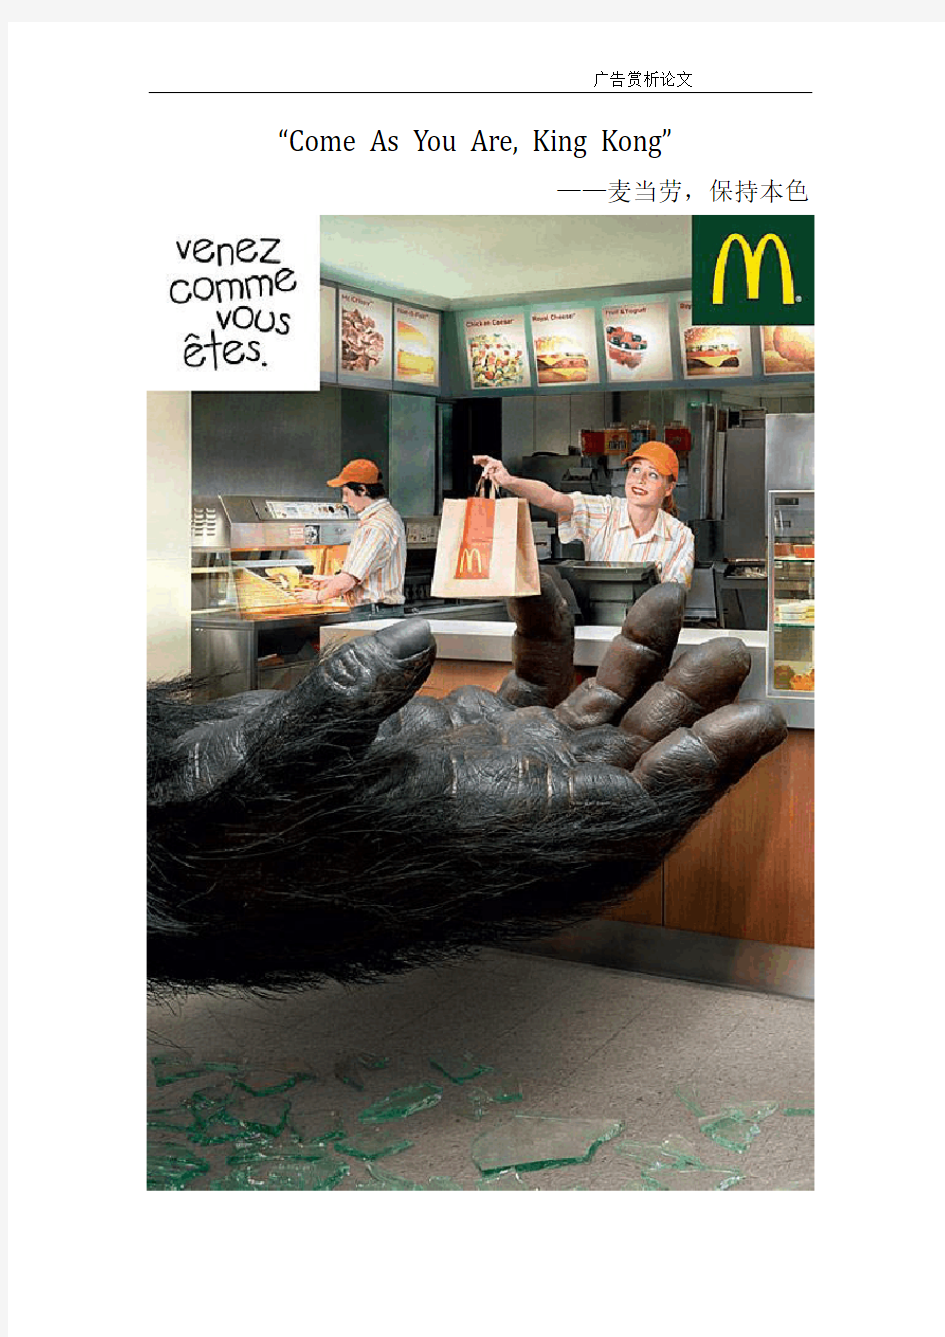 麦当劳海报广告分析及学习宣传语